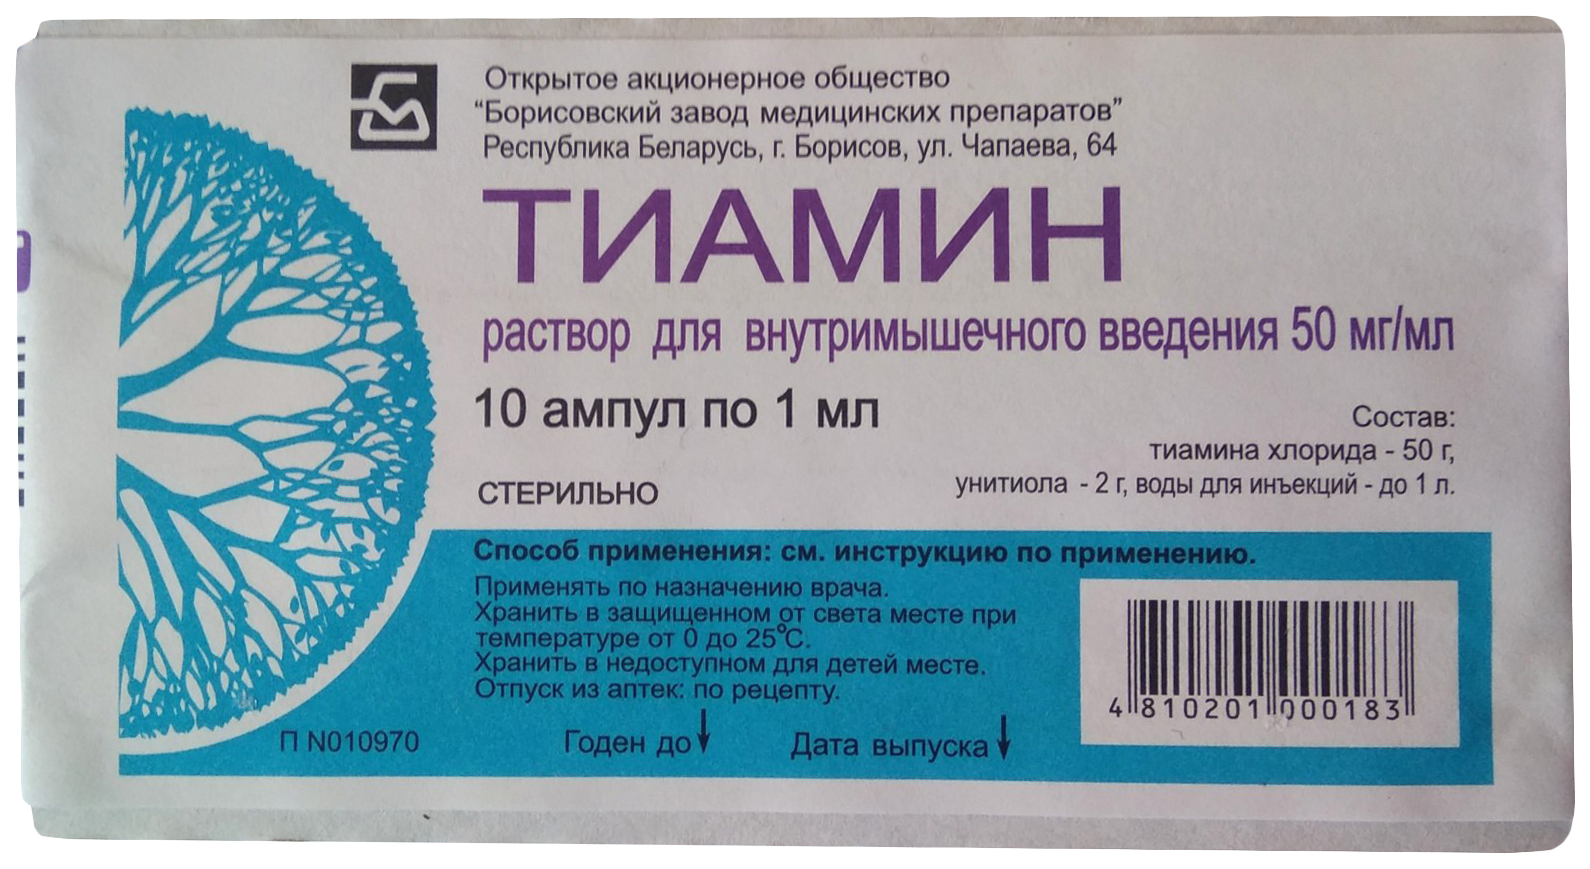 Тиамин раствор для внутримышечного введения 50 мг/мл 1 мл N10, Борисовский завод медицинских препаратов  - купить